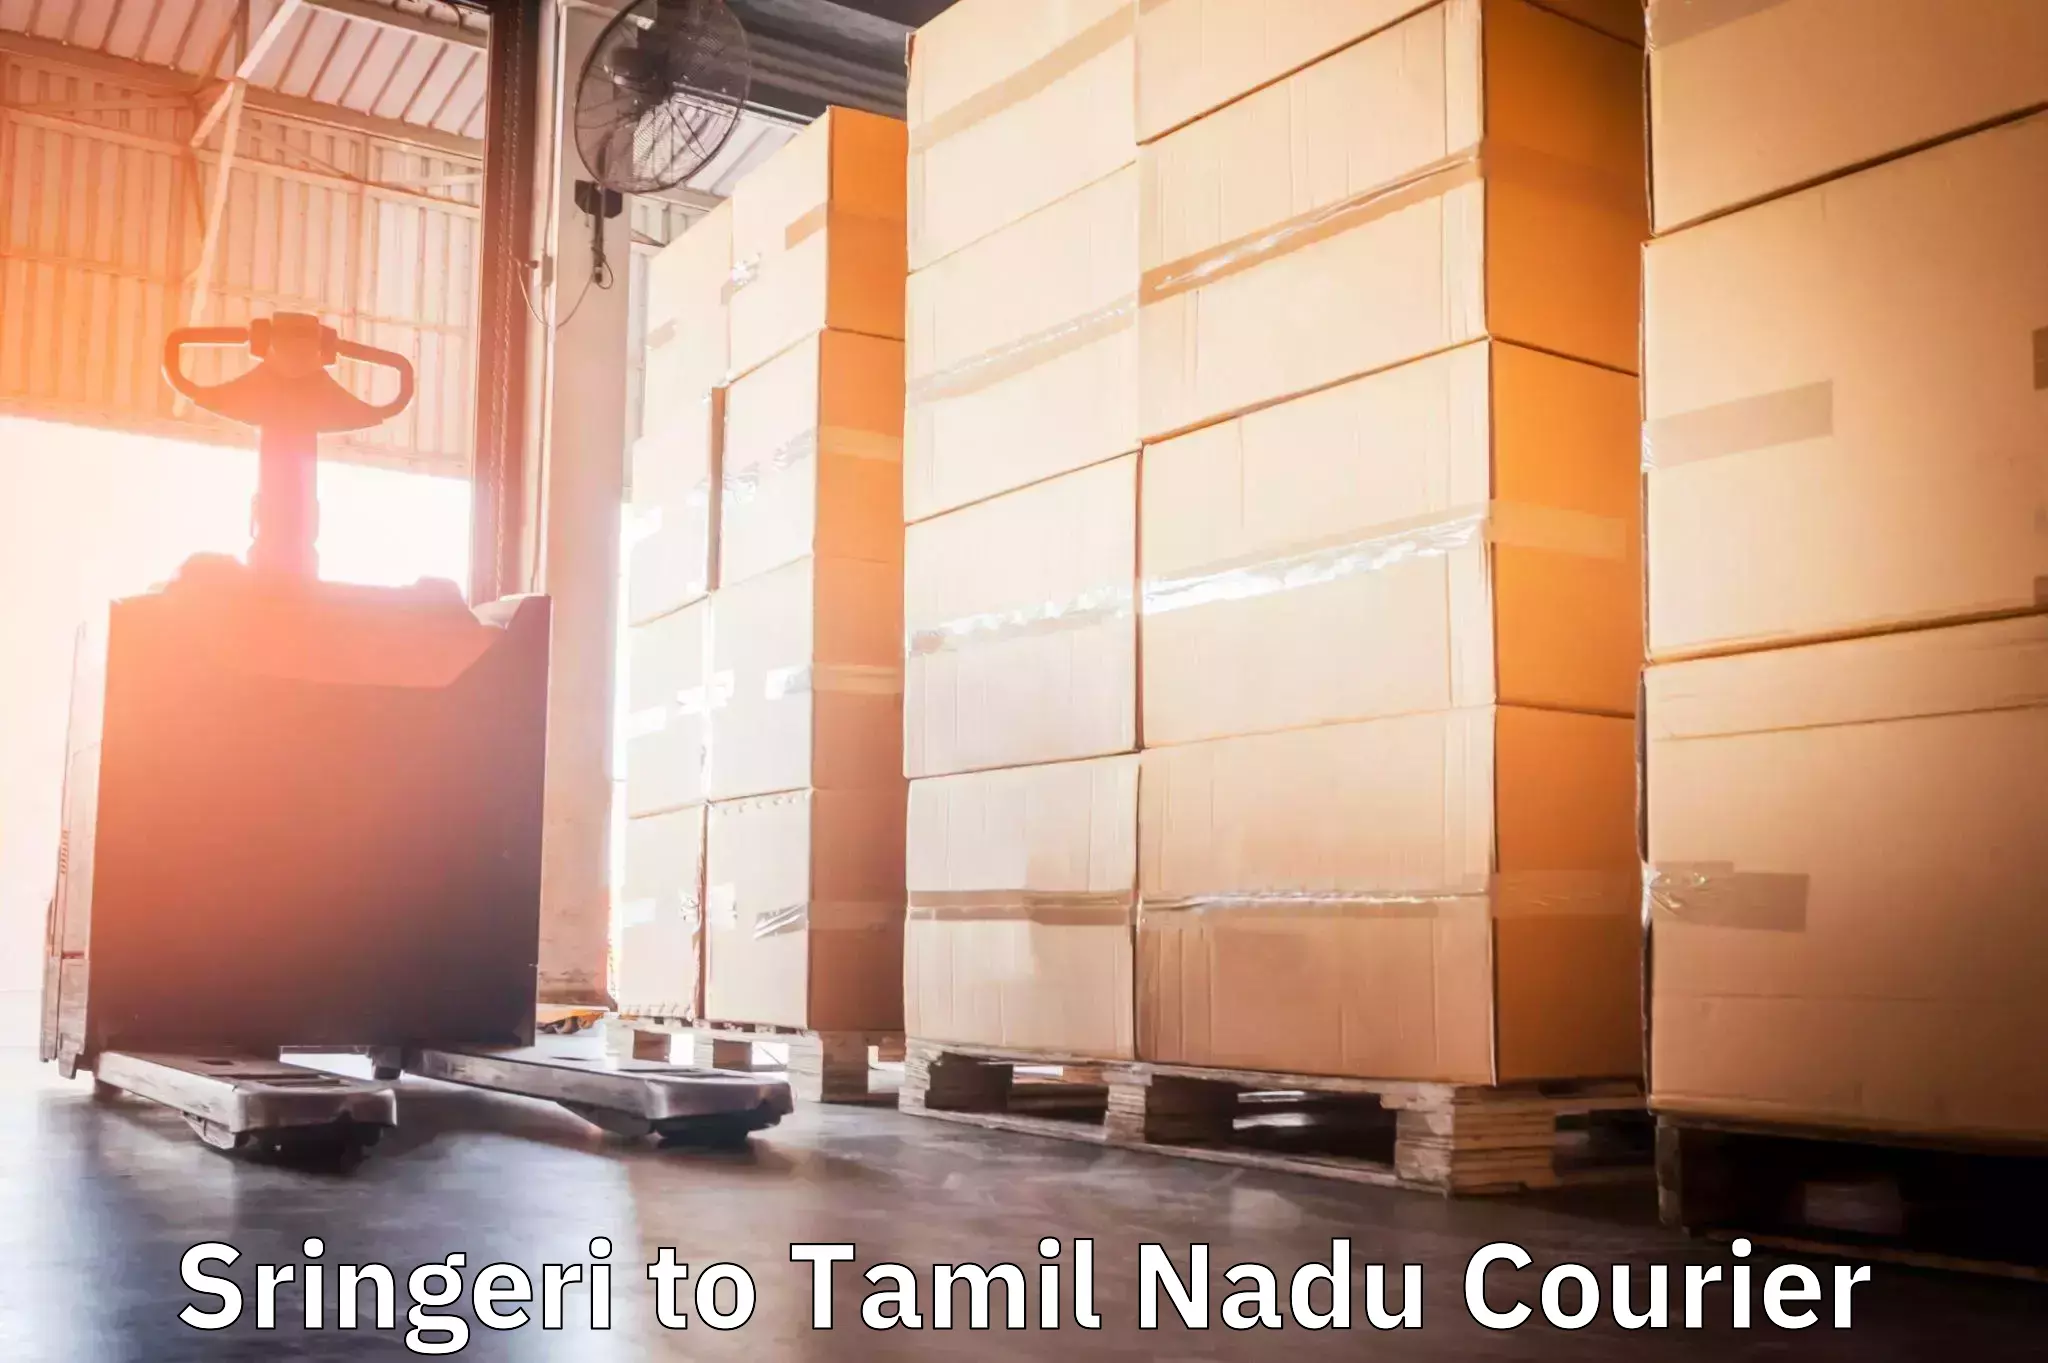 Courier rate comparison Sringeri to Thiruvarur